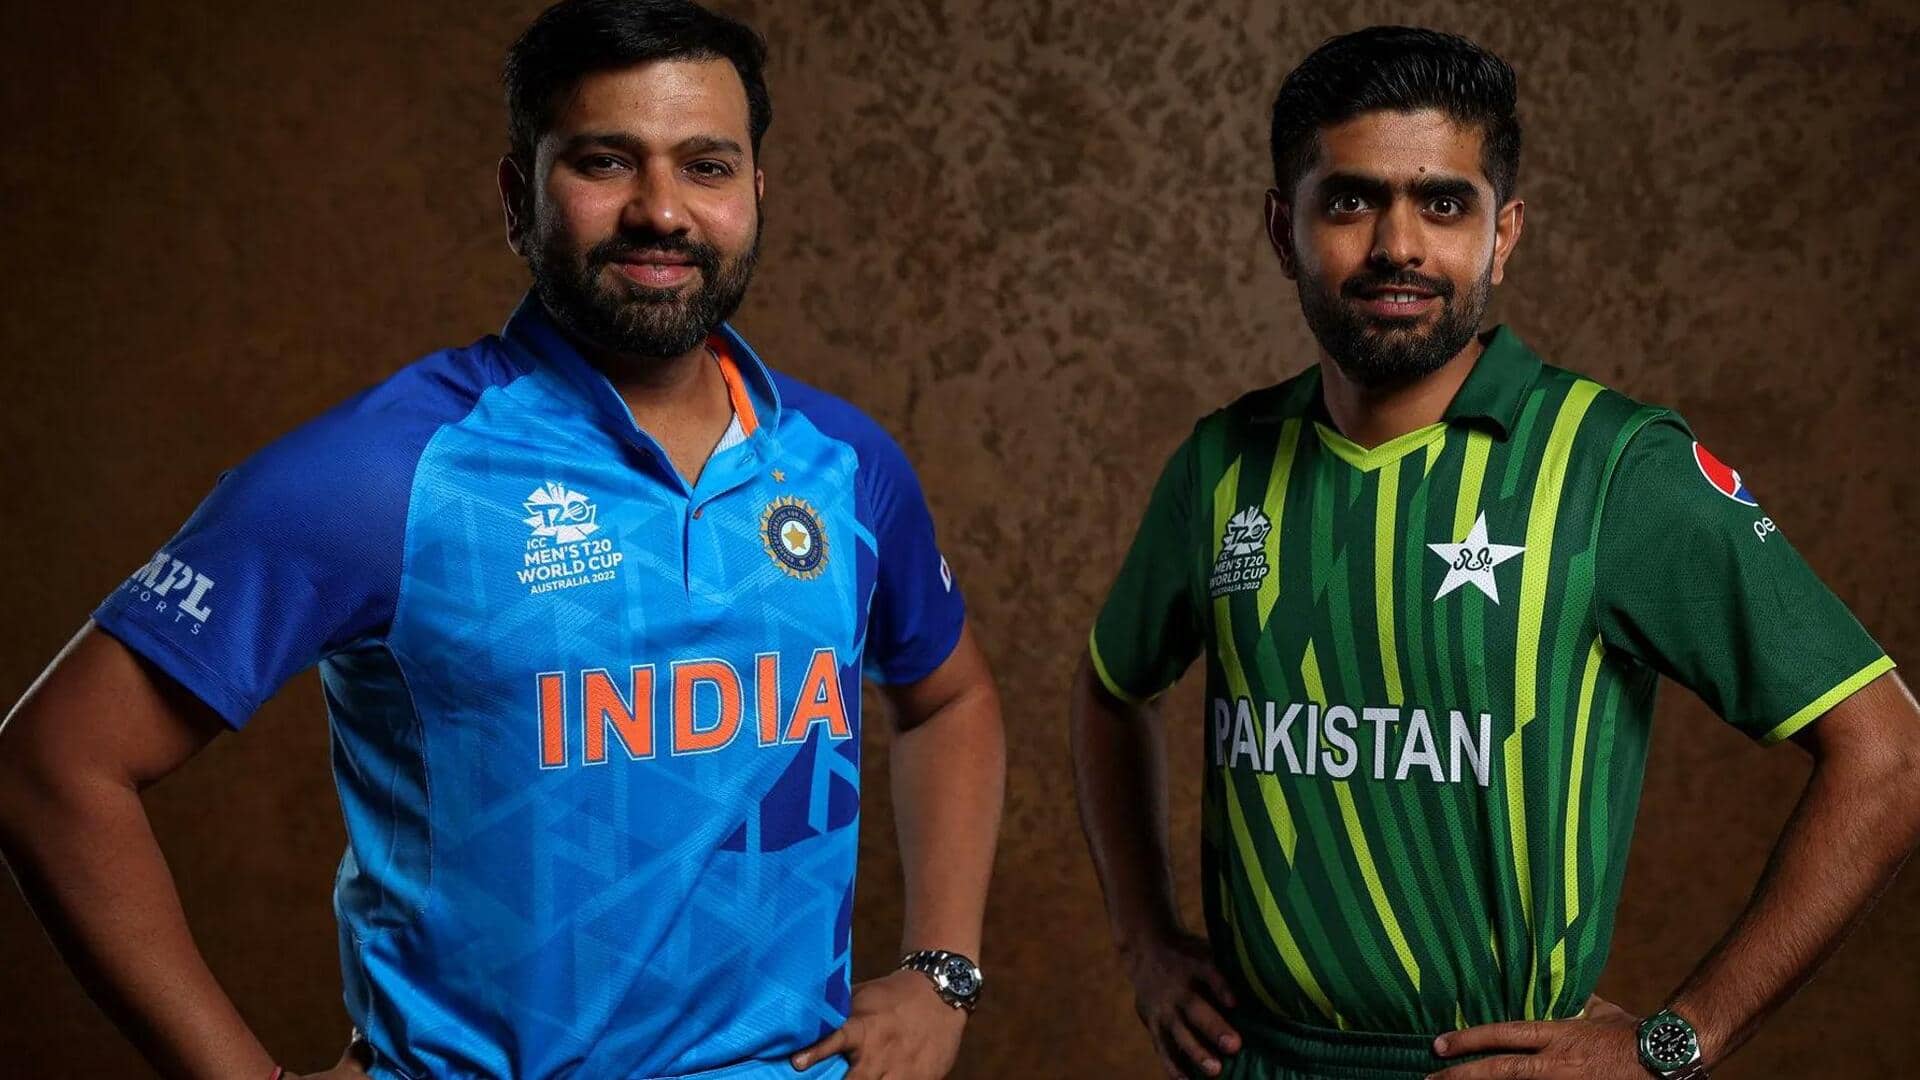 एशिया कप: भारत-पाकिस्तान मैचों के दौरान खिलाड़ियों में जमकर होती है तनातनी, जानिए 5 विवादित प्रकण 